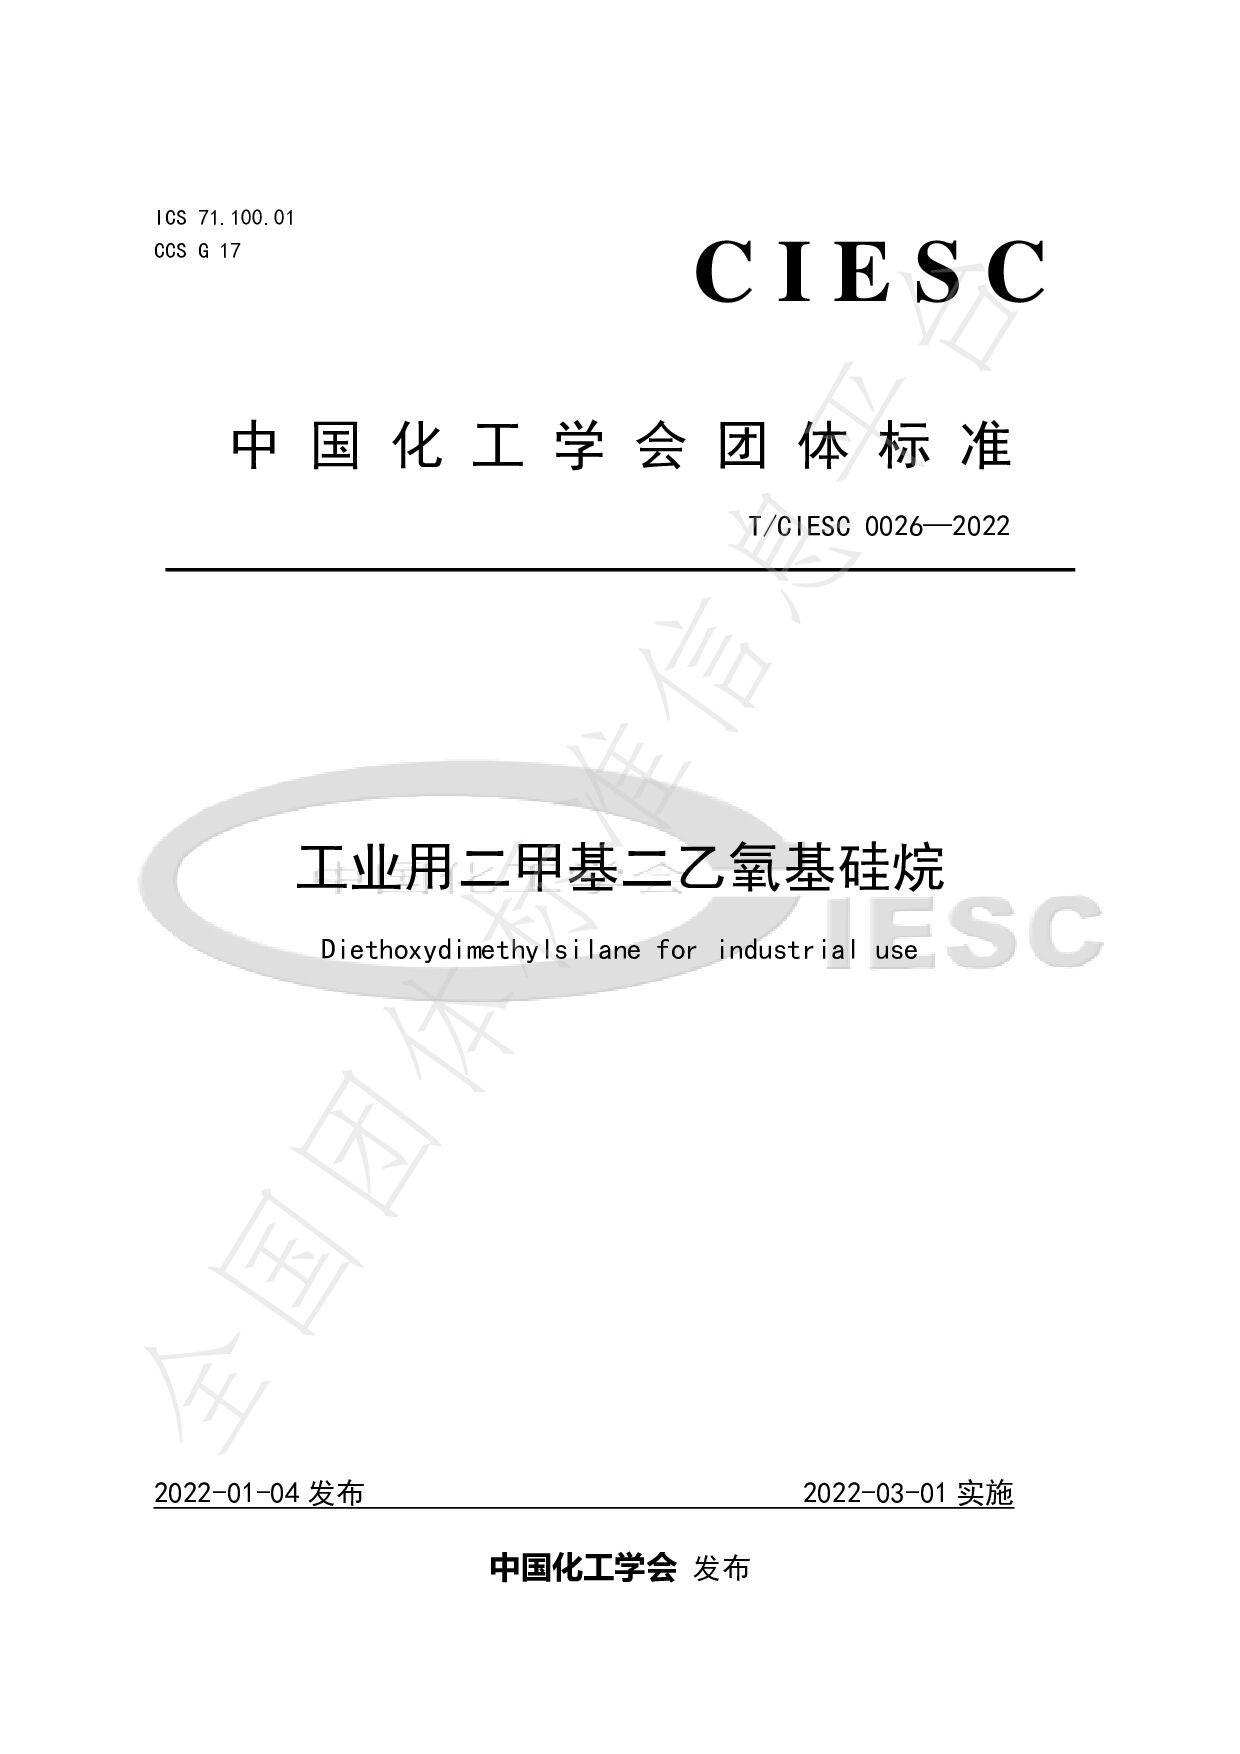 T/CIESC 0026-2022封面图